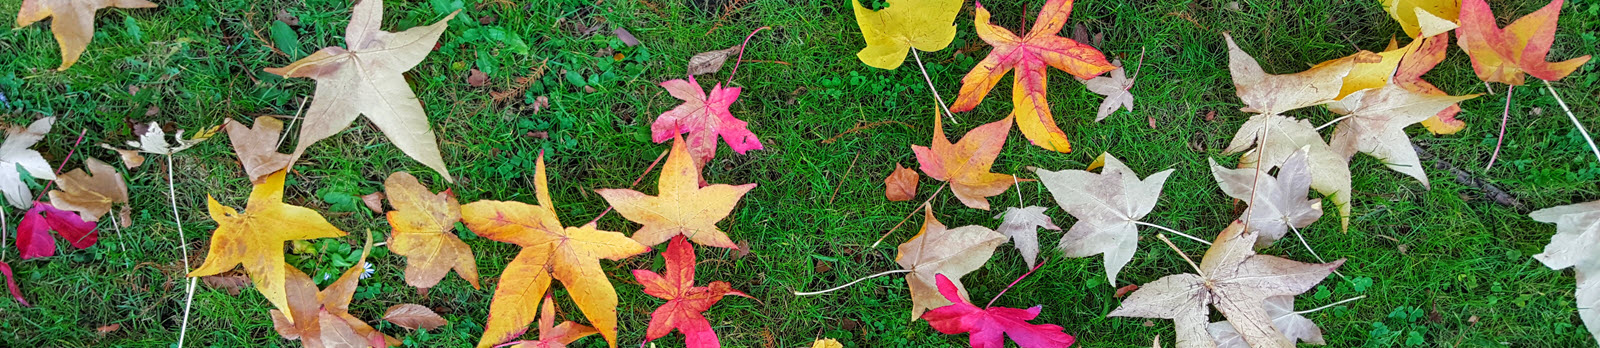 Liquidambar leaves in autumn 